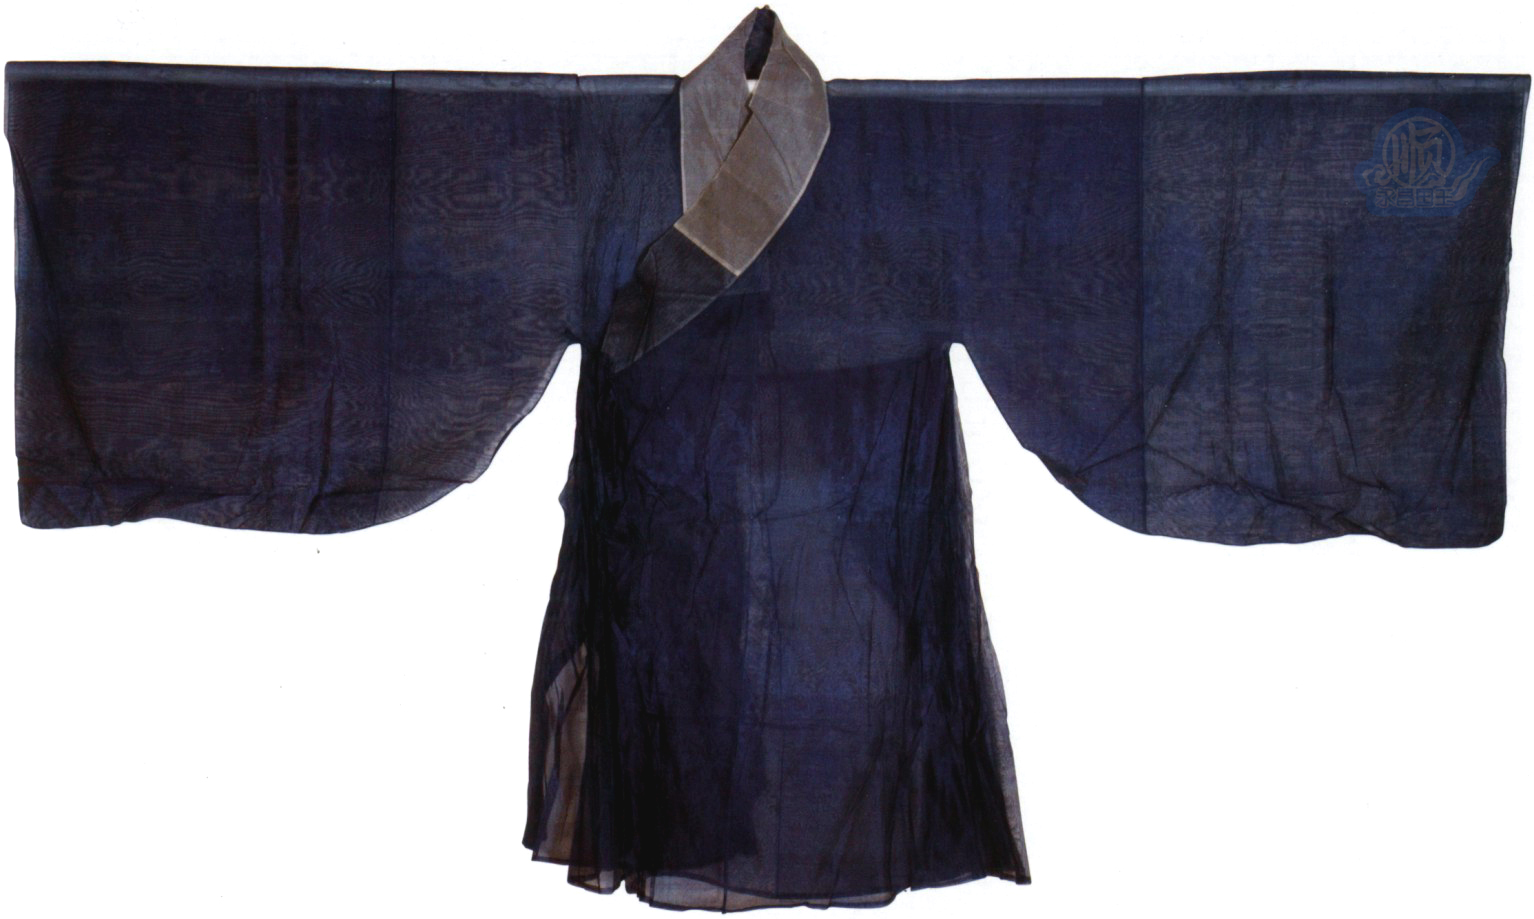 道袍(道教傳統服飾)